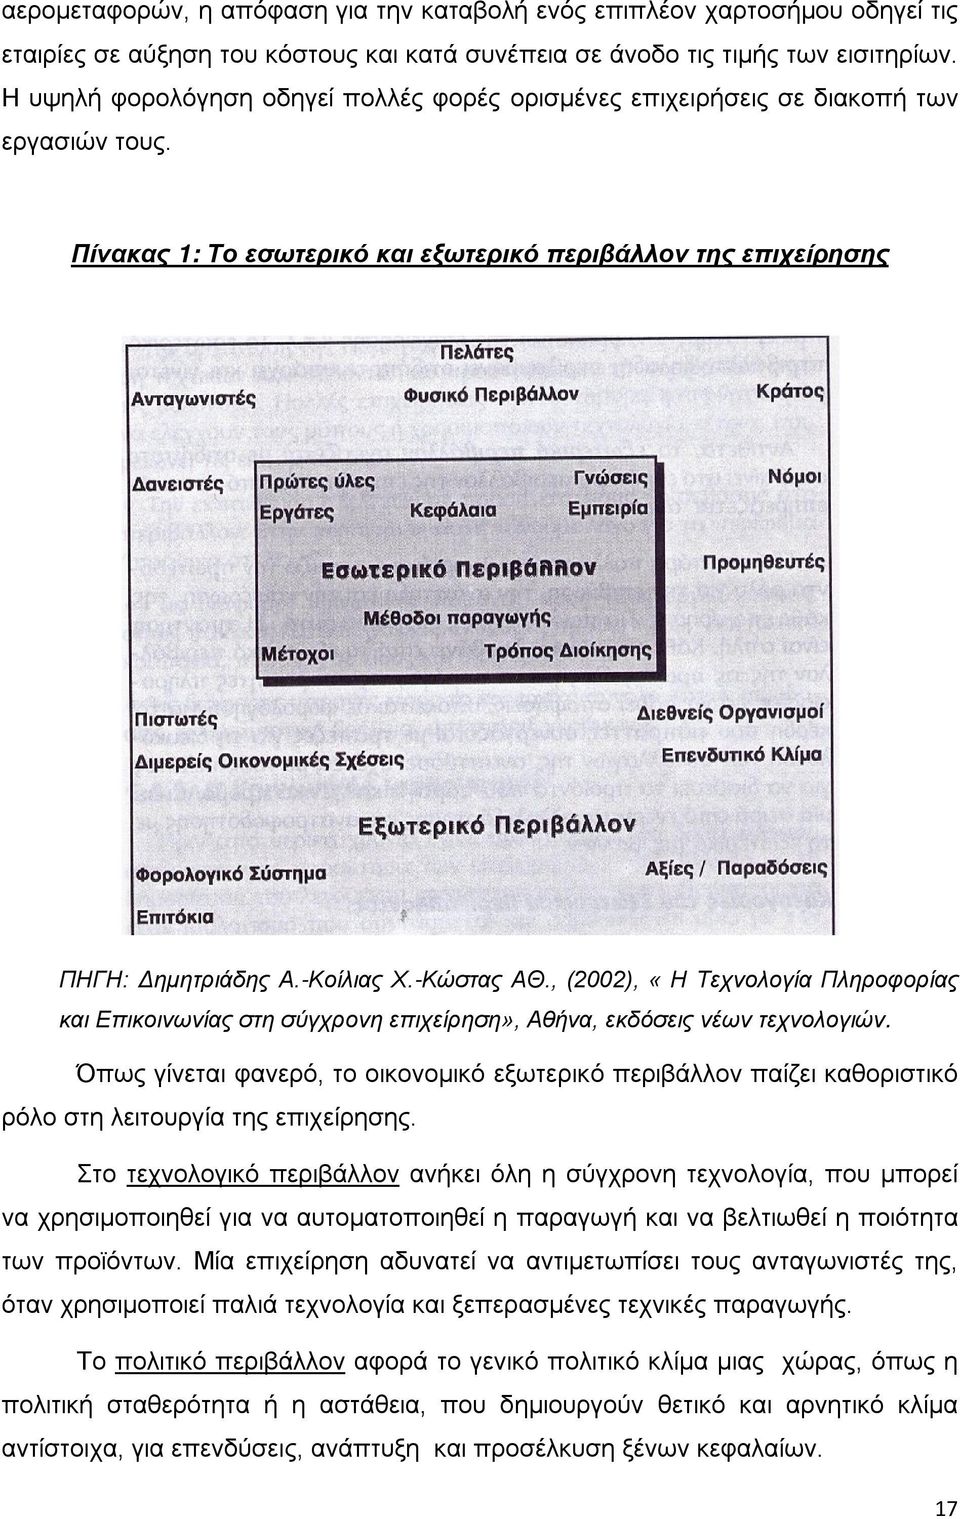 , (2002), «Η Τεχνολογία Πληροφορίας και Επικοινωνίας στη σύγχρονη επιχείρηση», Αθήνα, εκδόσεις νέων τεχνολογιών.